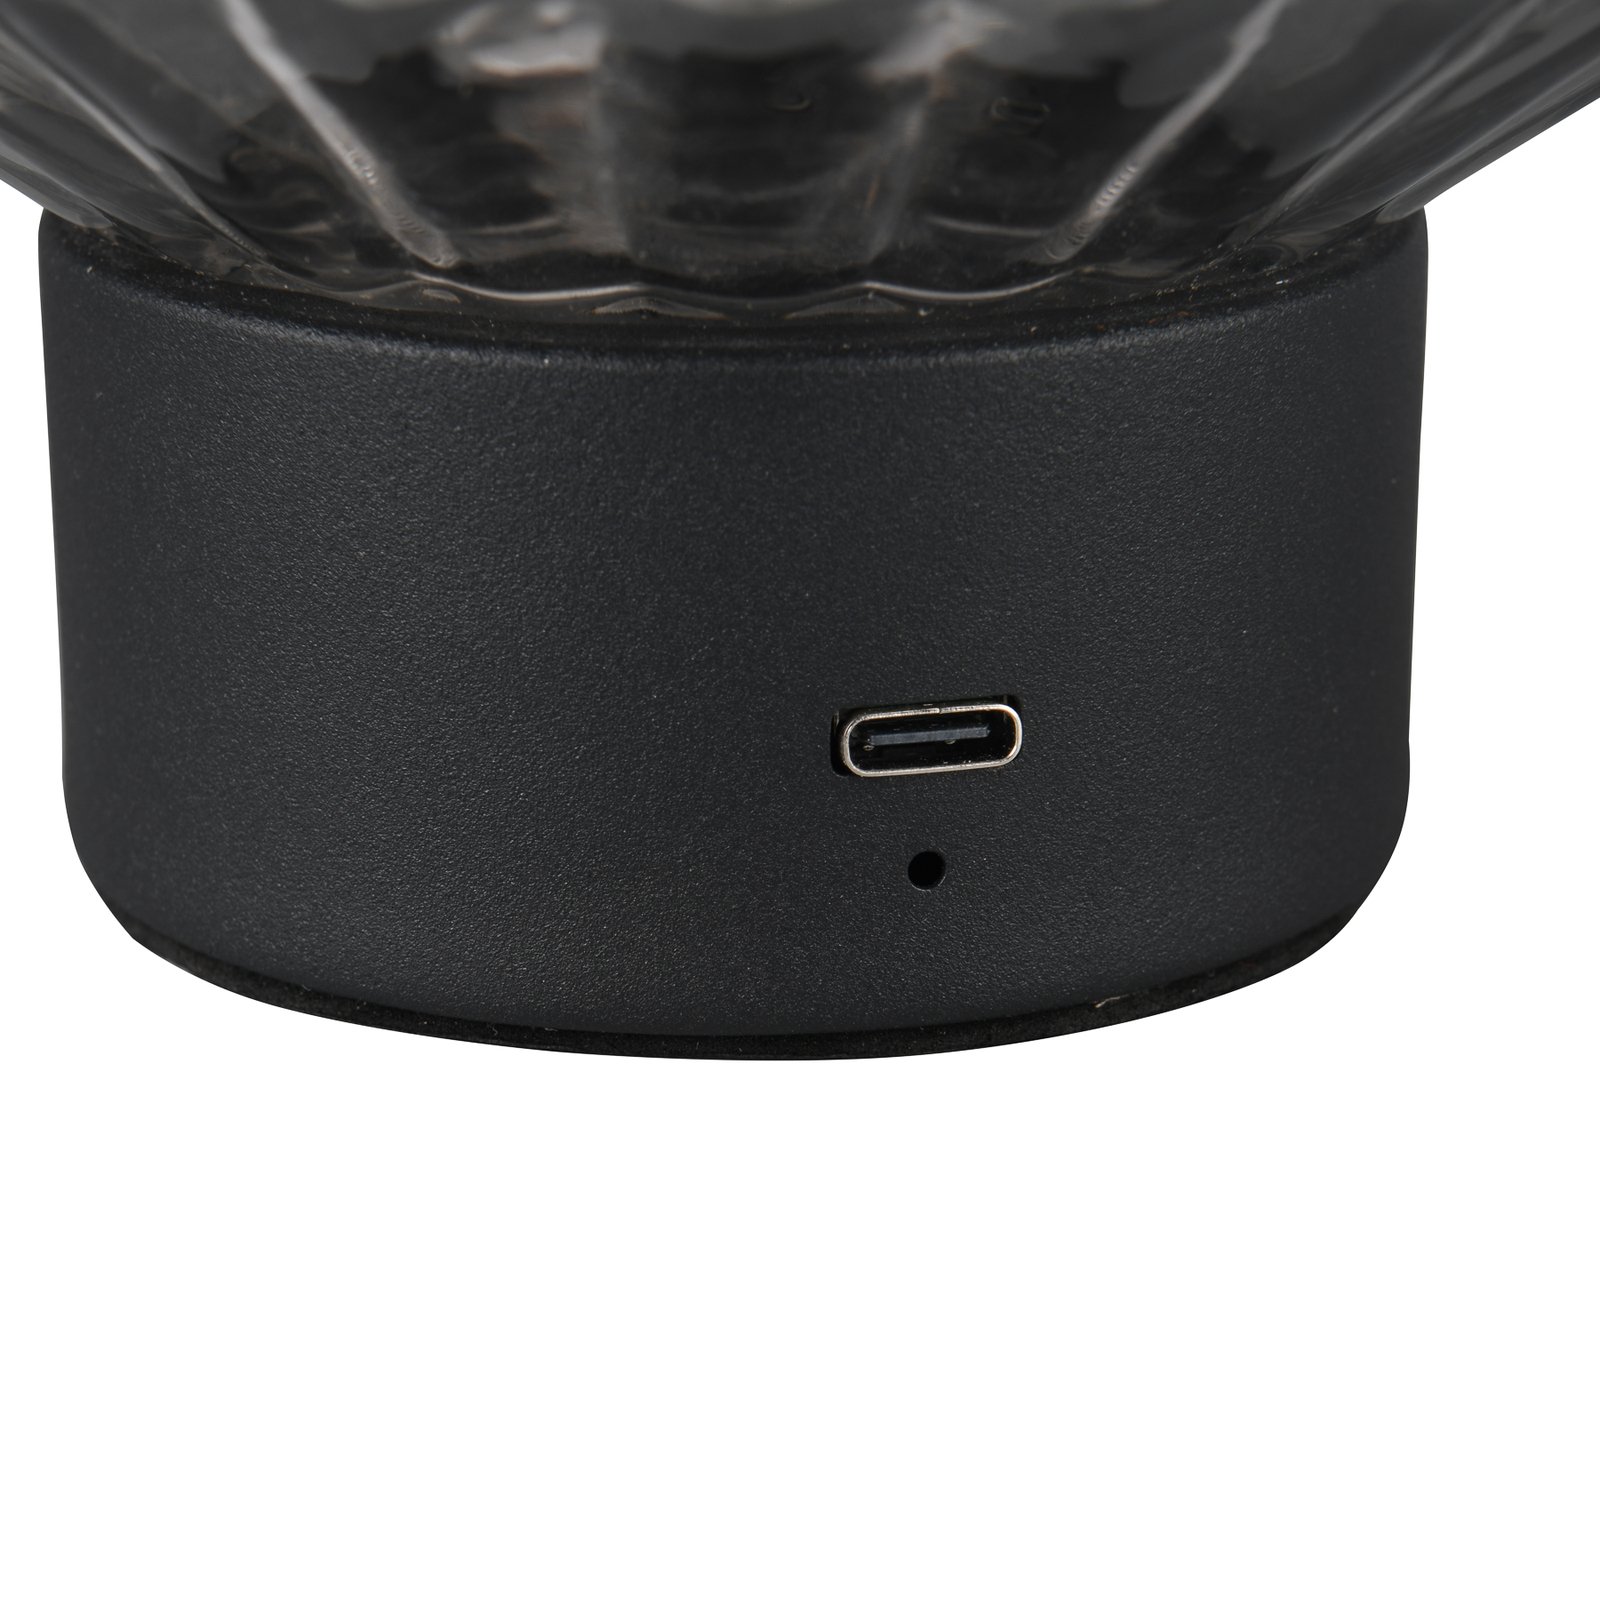 Lord LED-ladattava pöytävalaisin, musta/savu, korkeus 19,5 cm, lasi